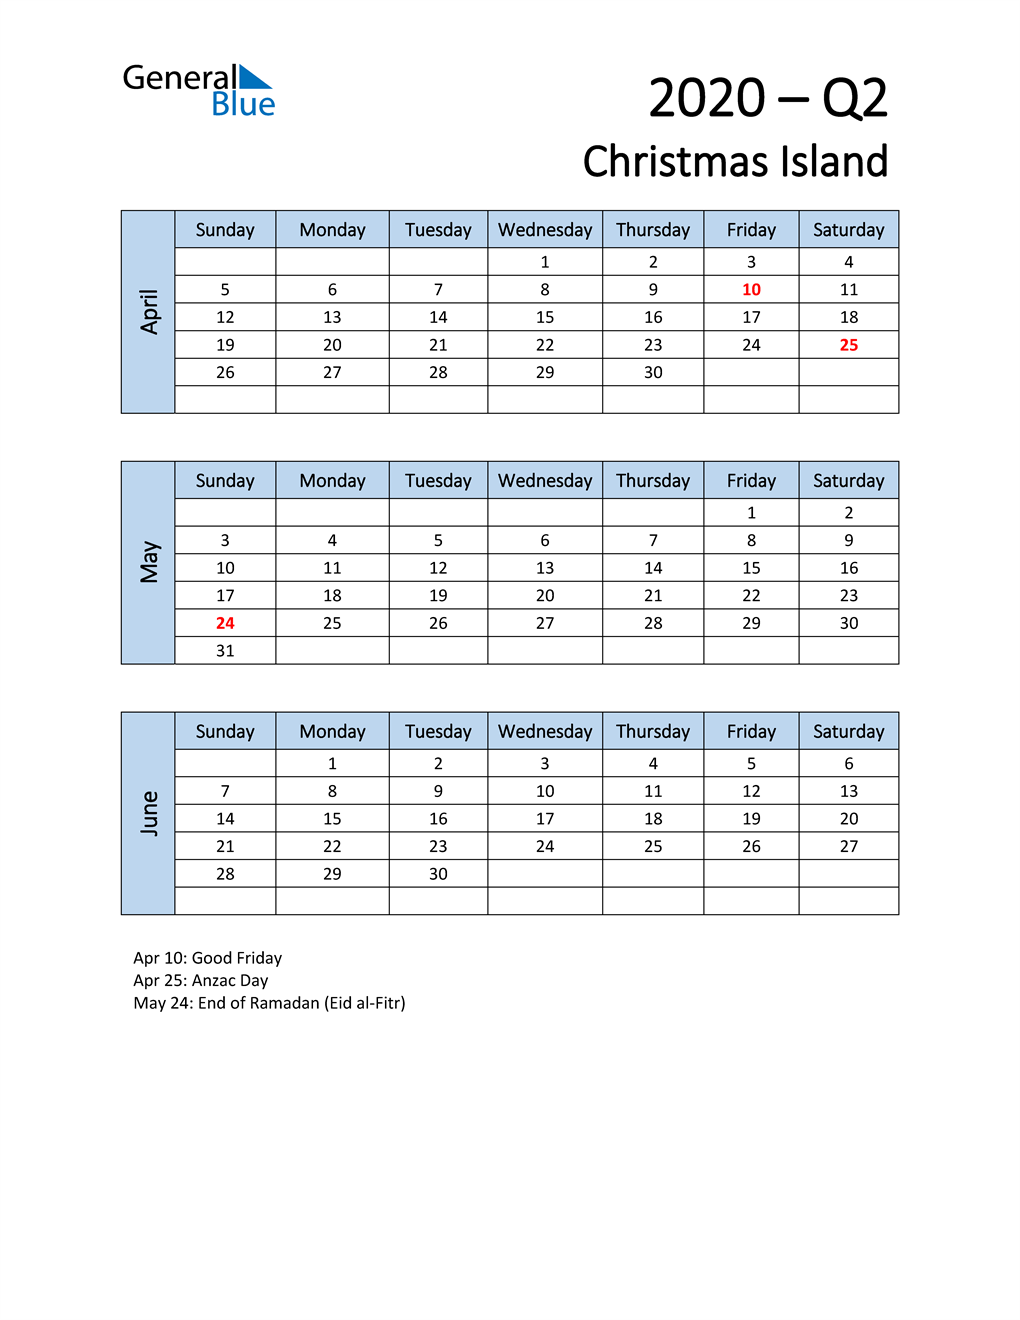  Free Q2 2020 Calendar for Christmas Island